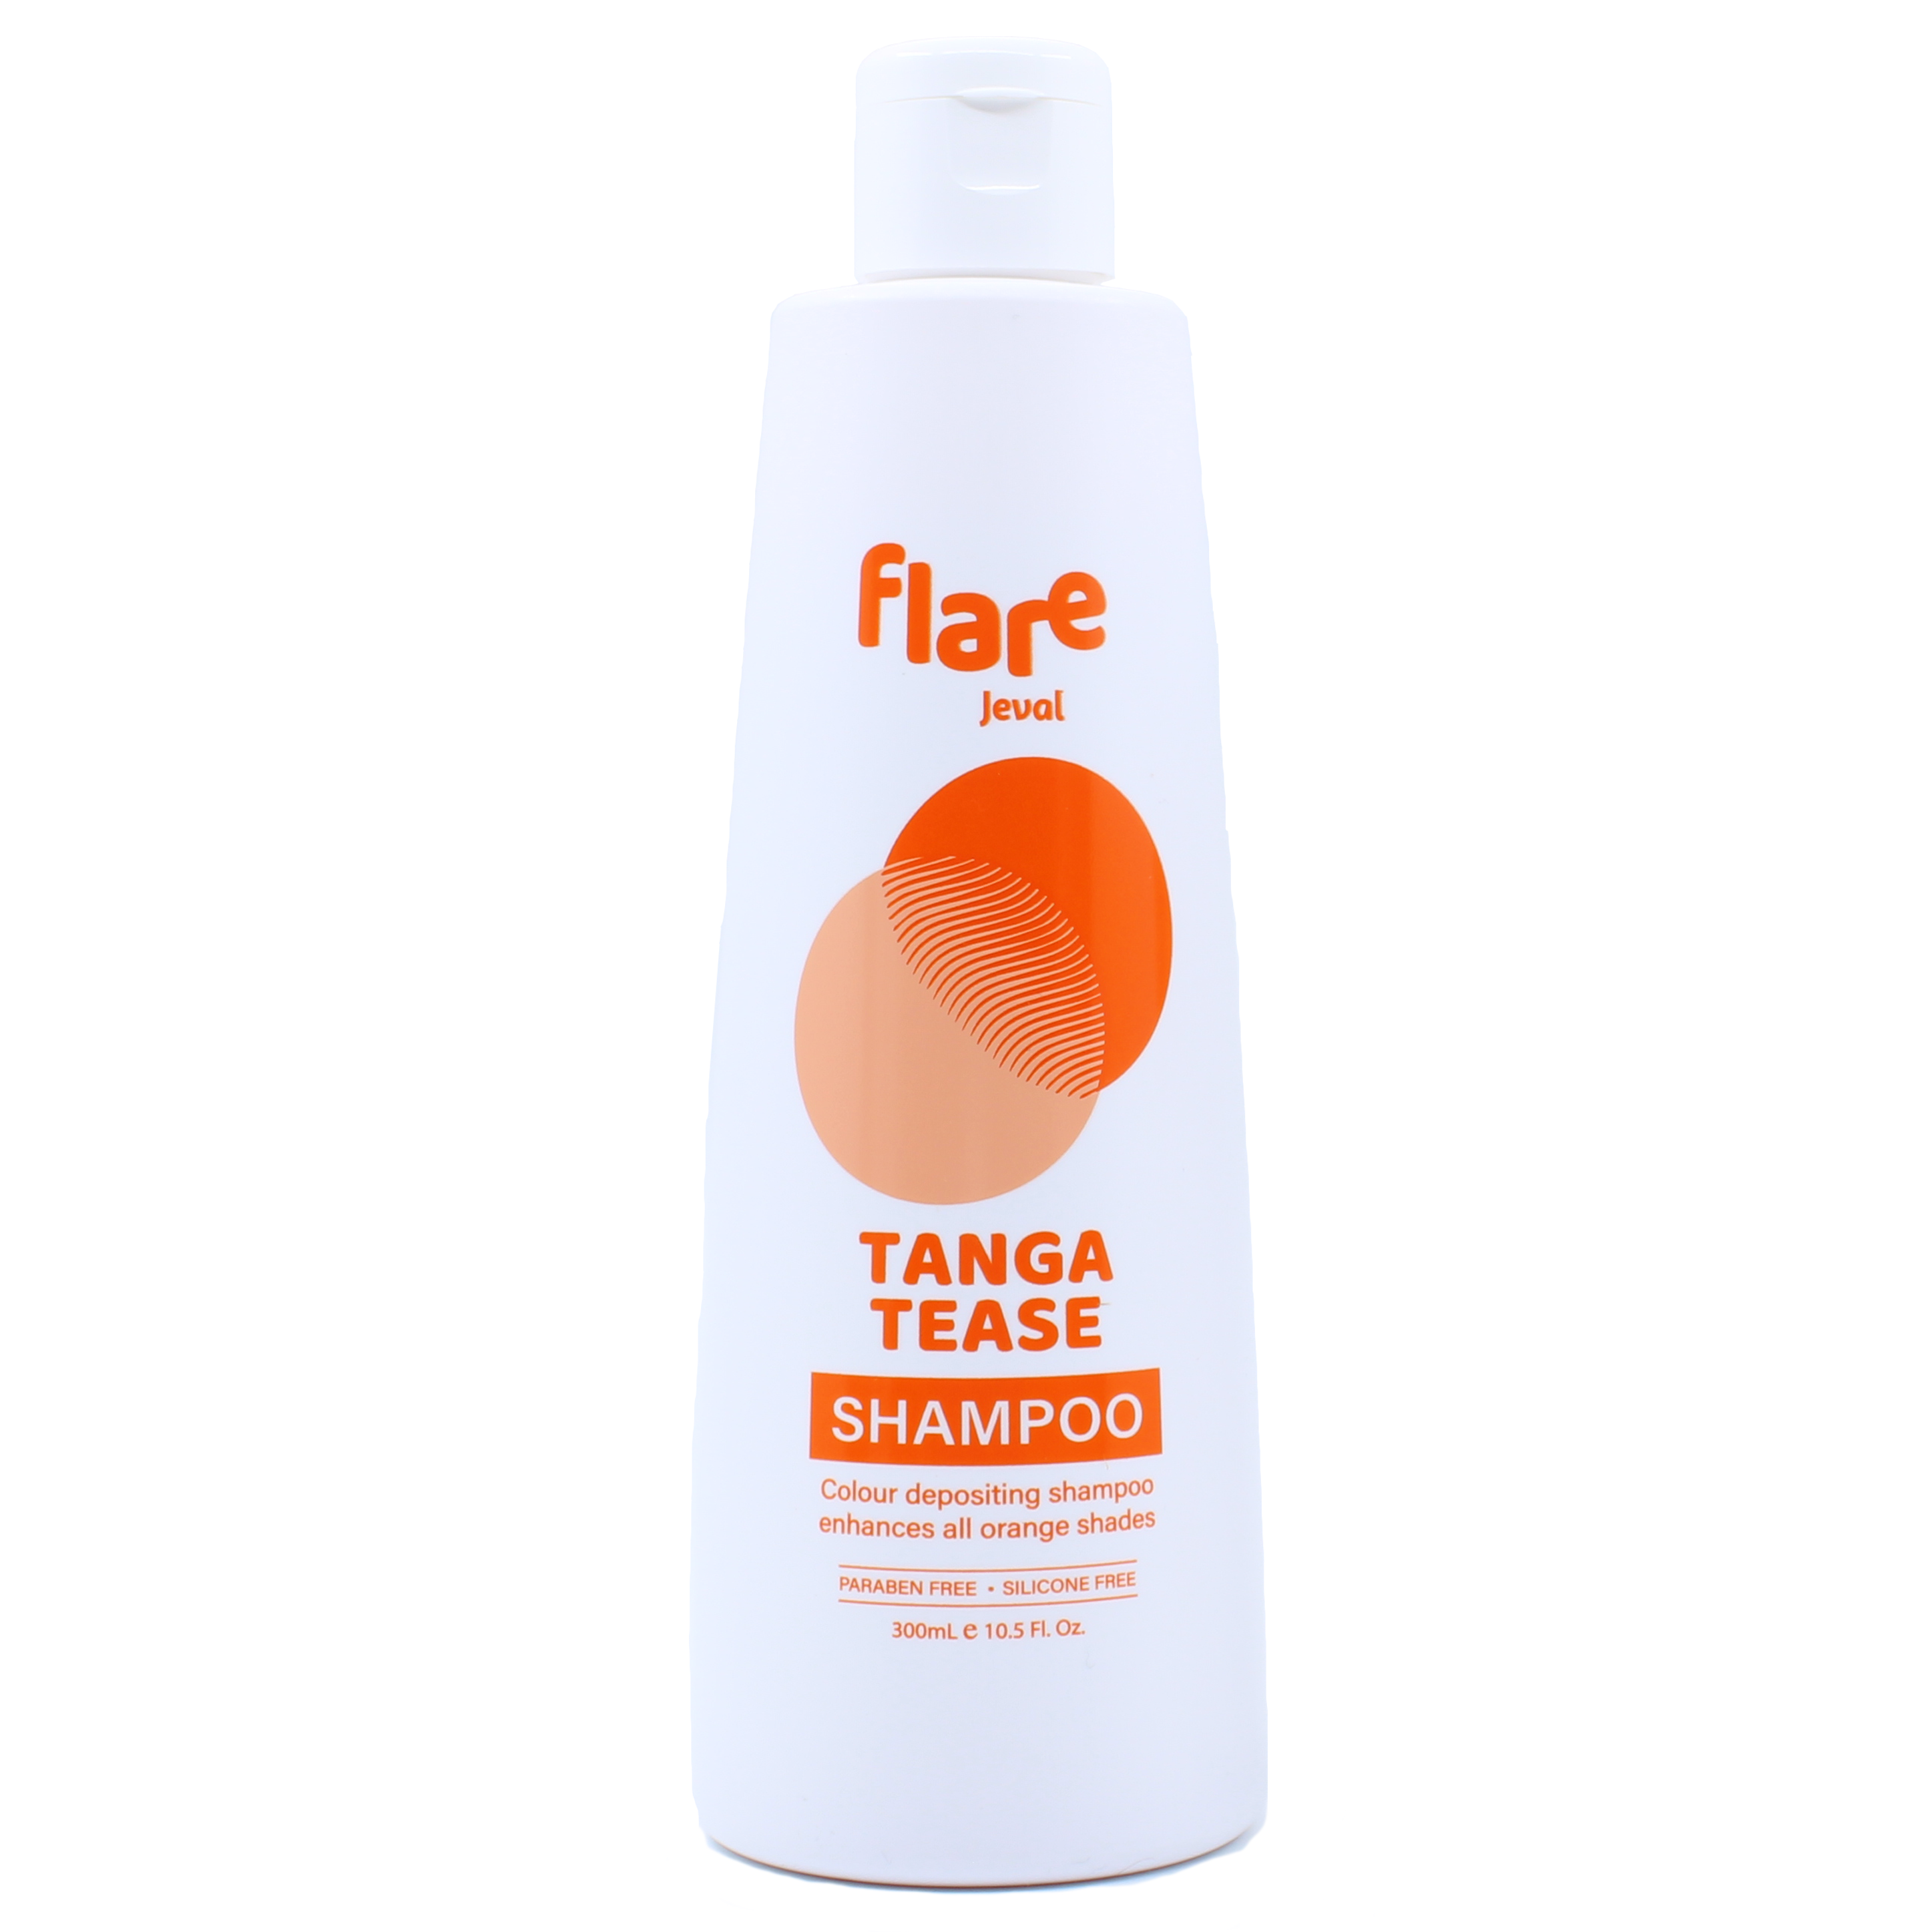 Flare Tanga Tease Shampoo 300ml